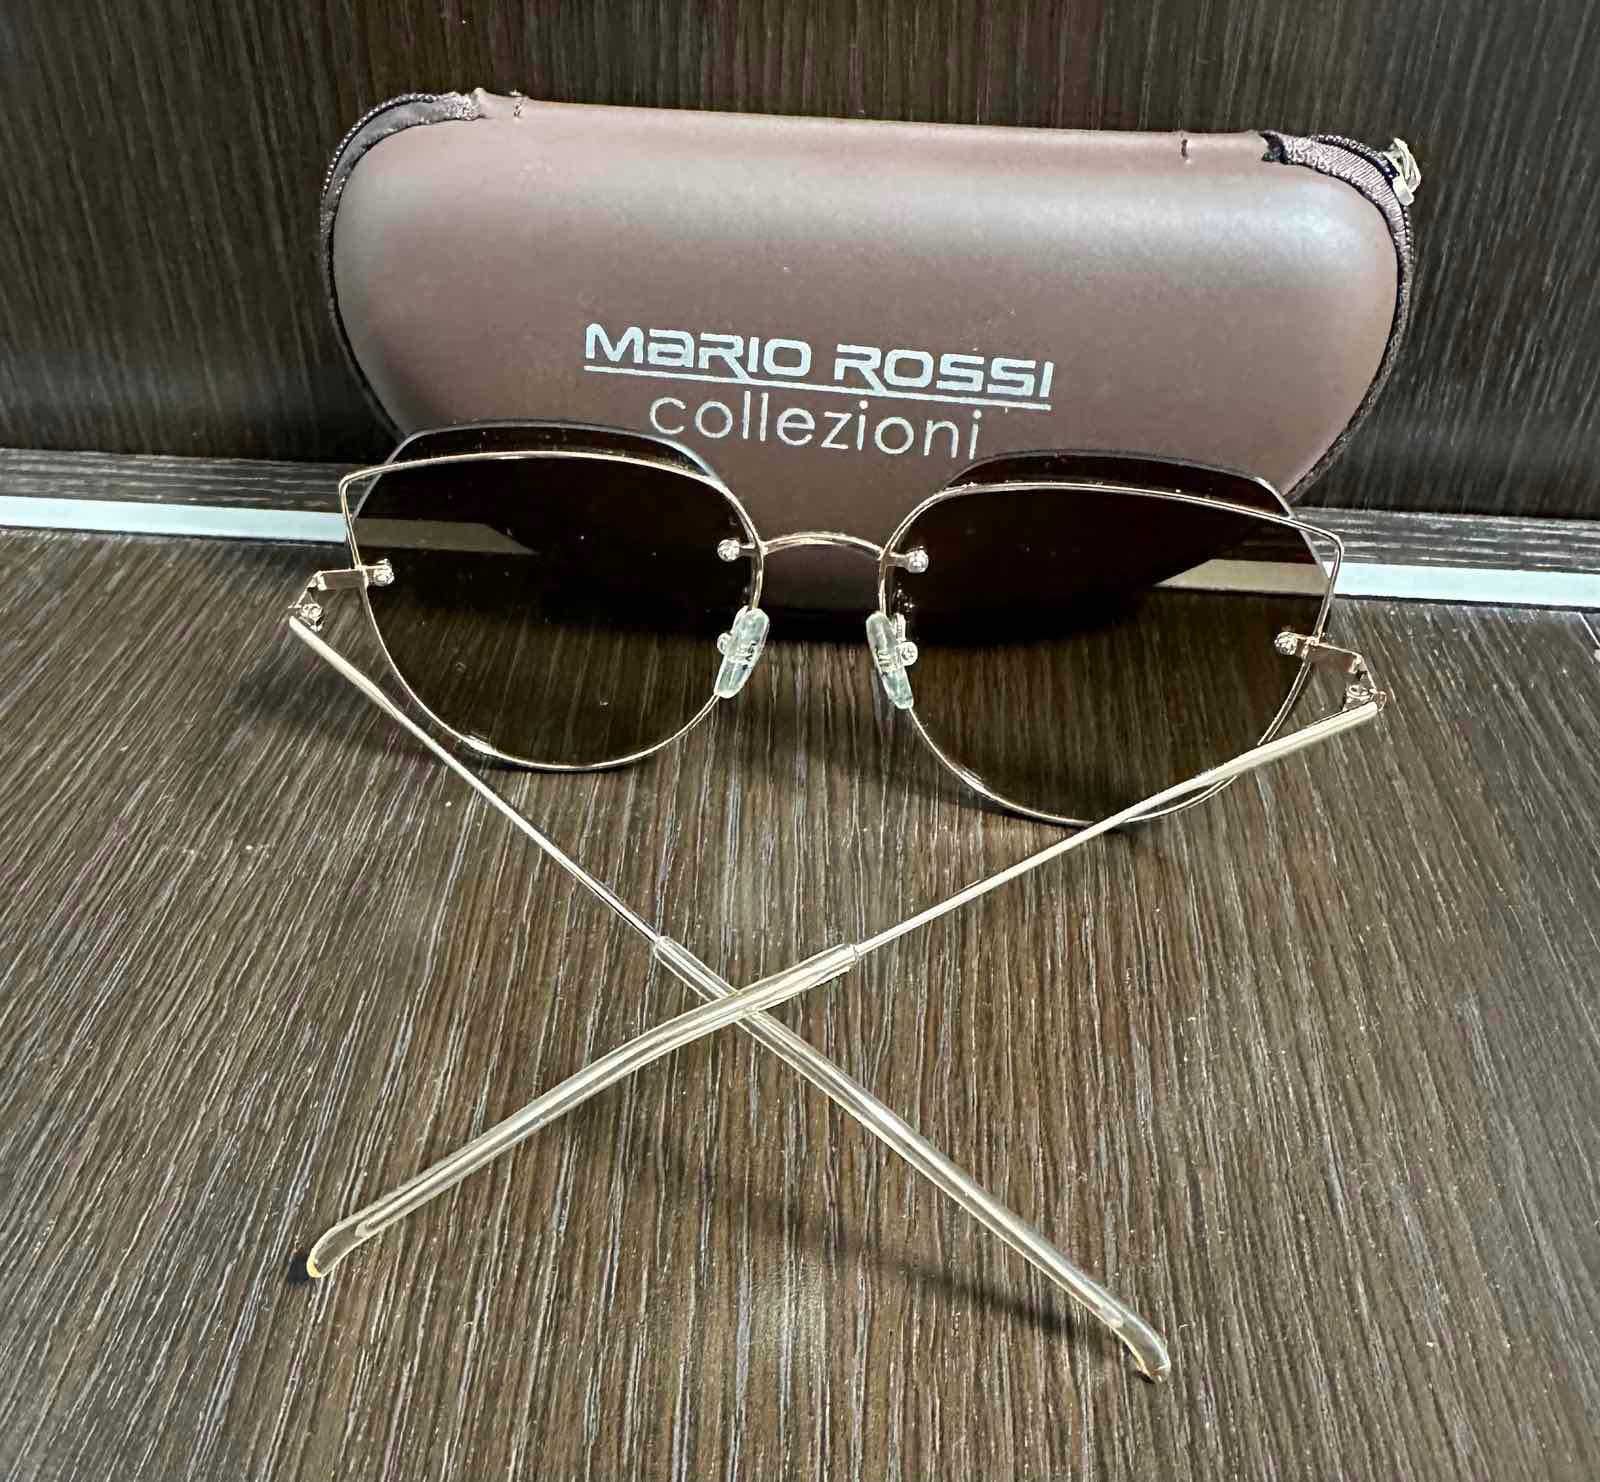 Жіночі окуляри Mario Rossi